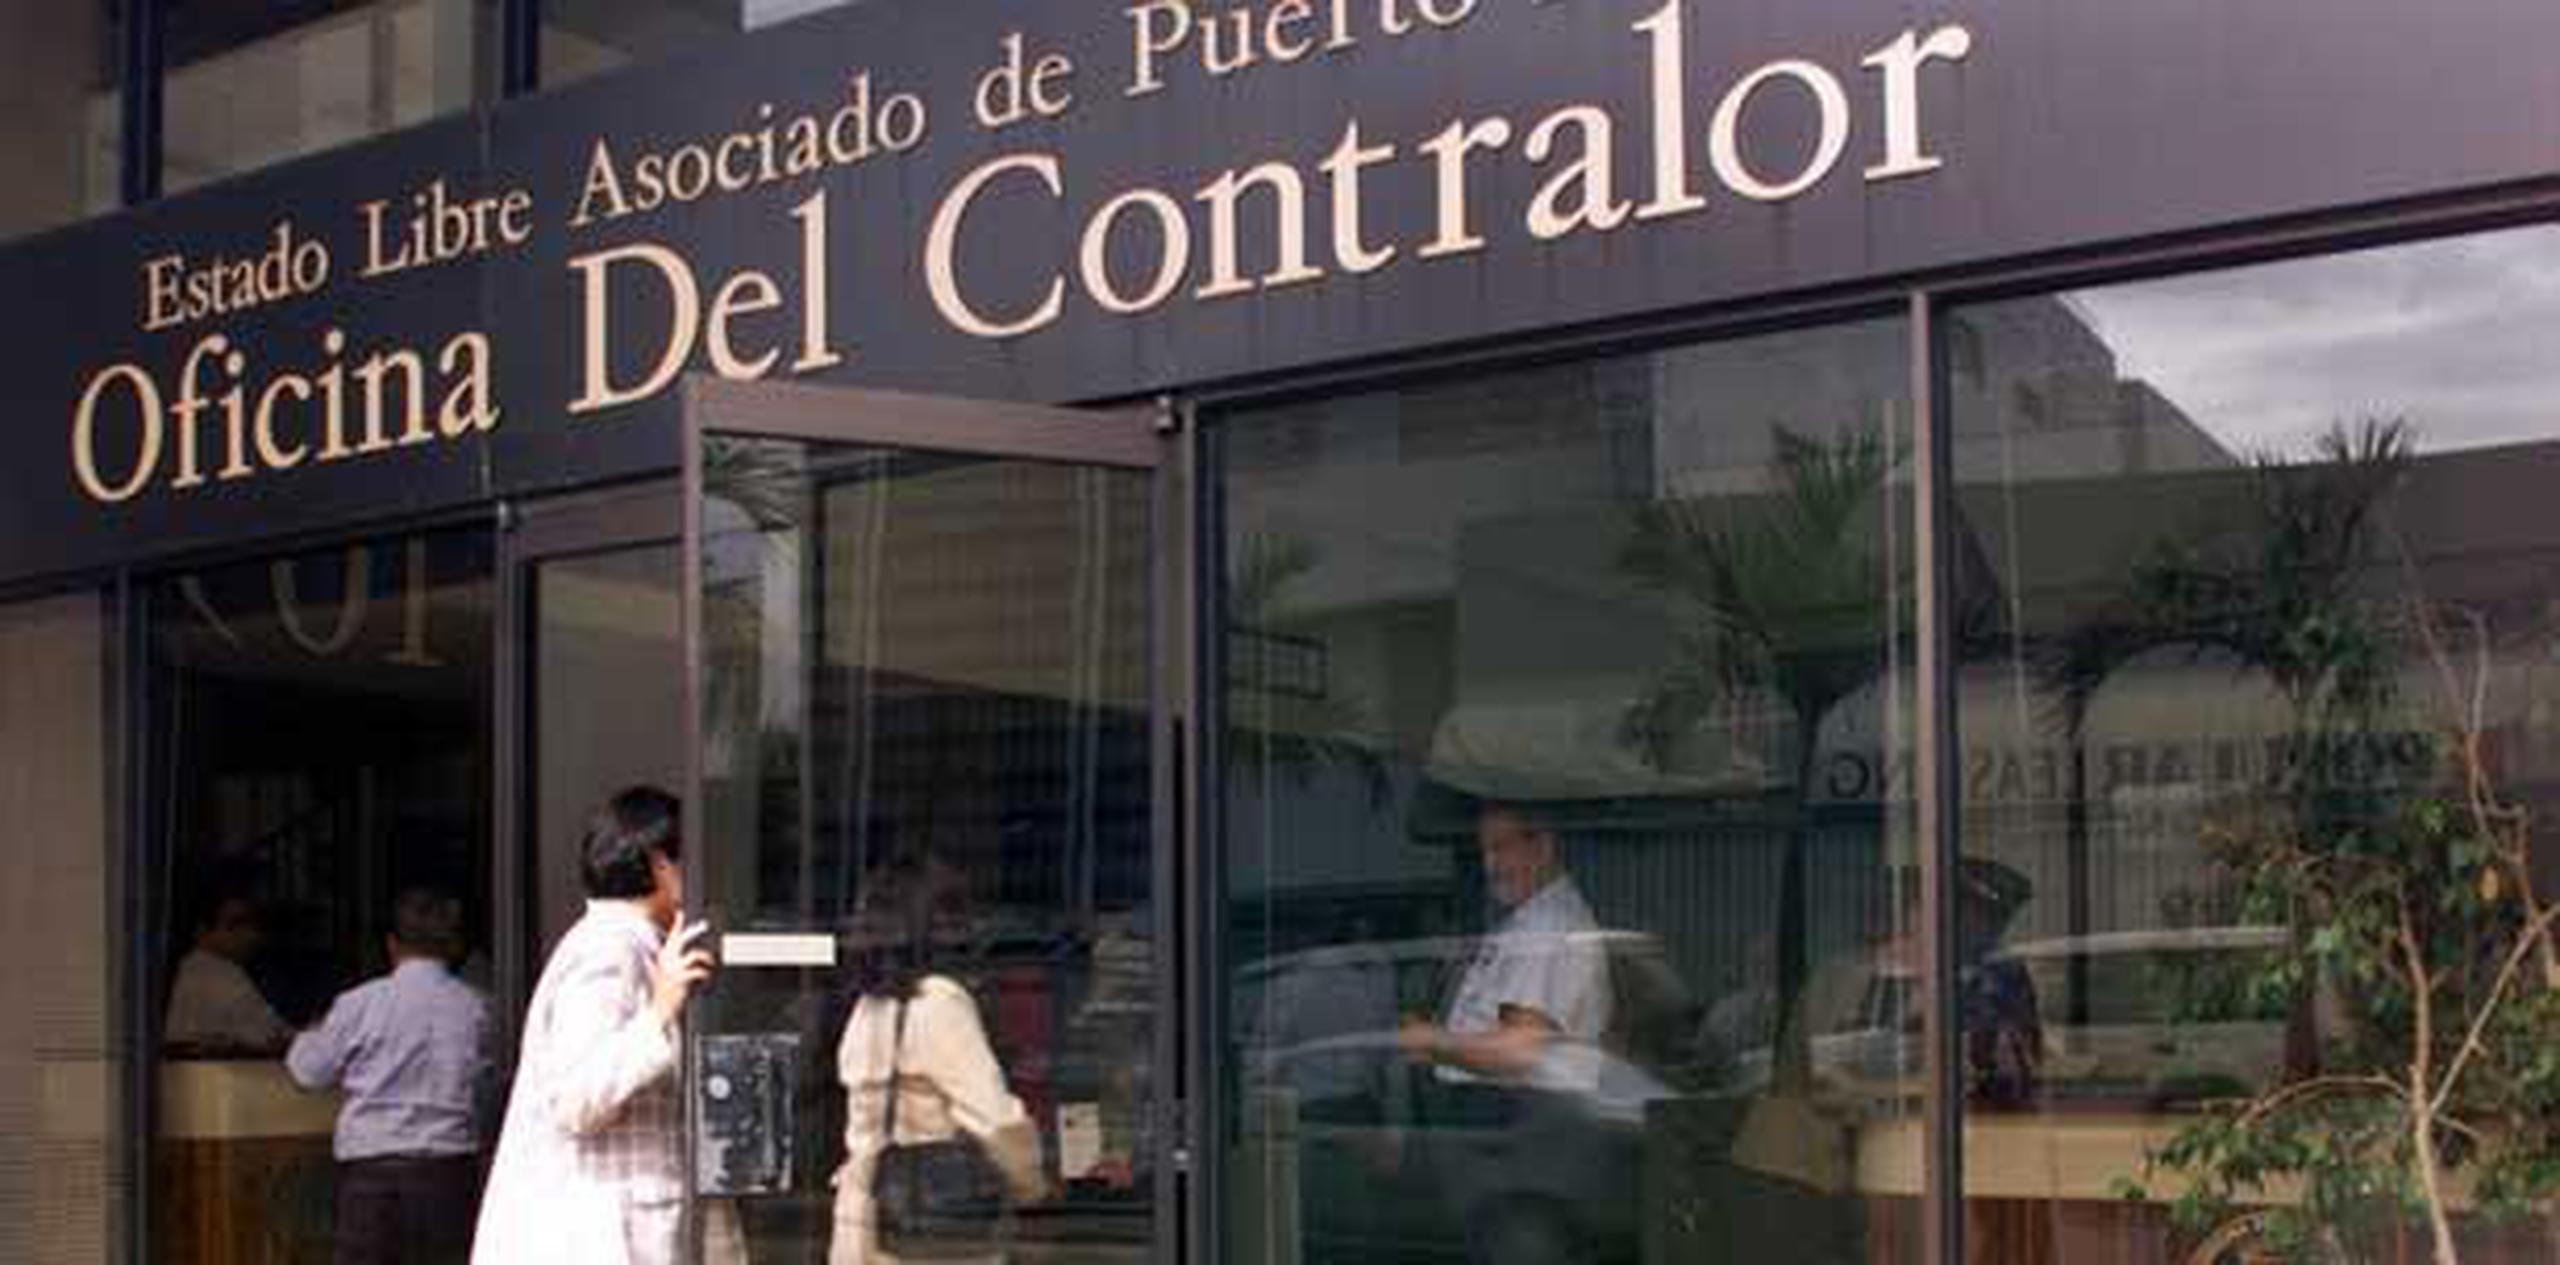 Según la Oficina del Contralor, el gobierno municipal de Santa Isabel sobreestimó los ingresos esos años. (Archivo)